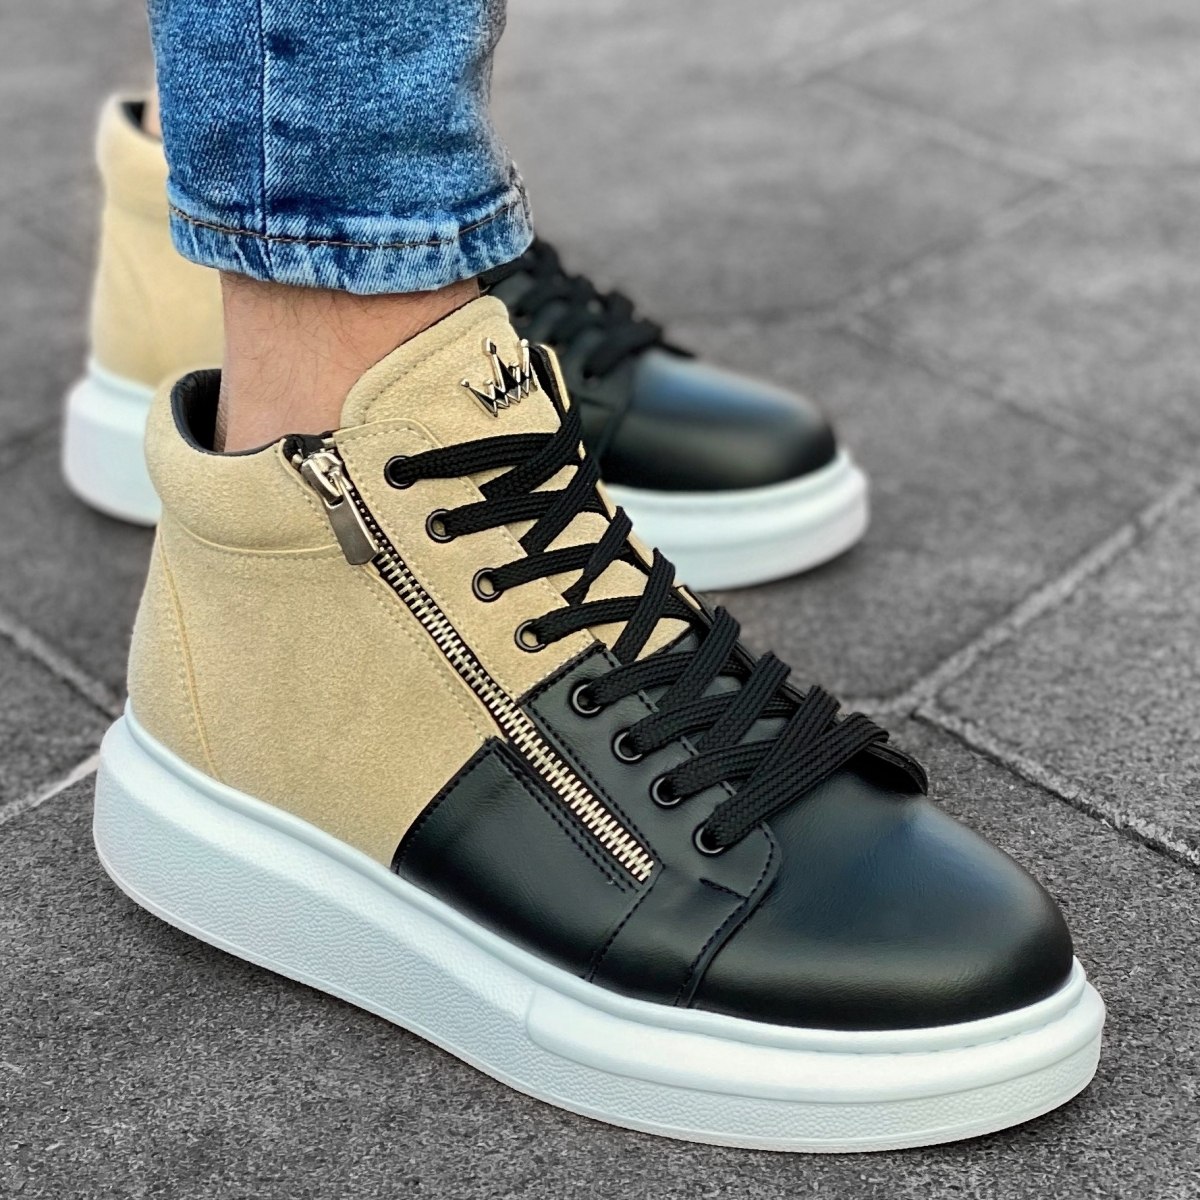 Herren High Top Sneakers Designer Schuhe mit Reissverschluss in creme-schwarz - 1